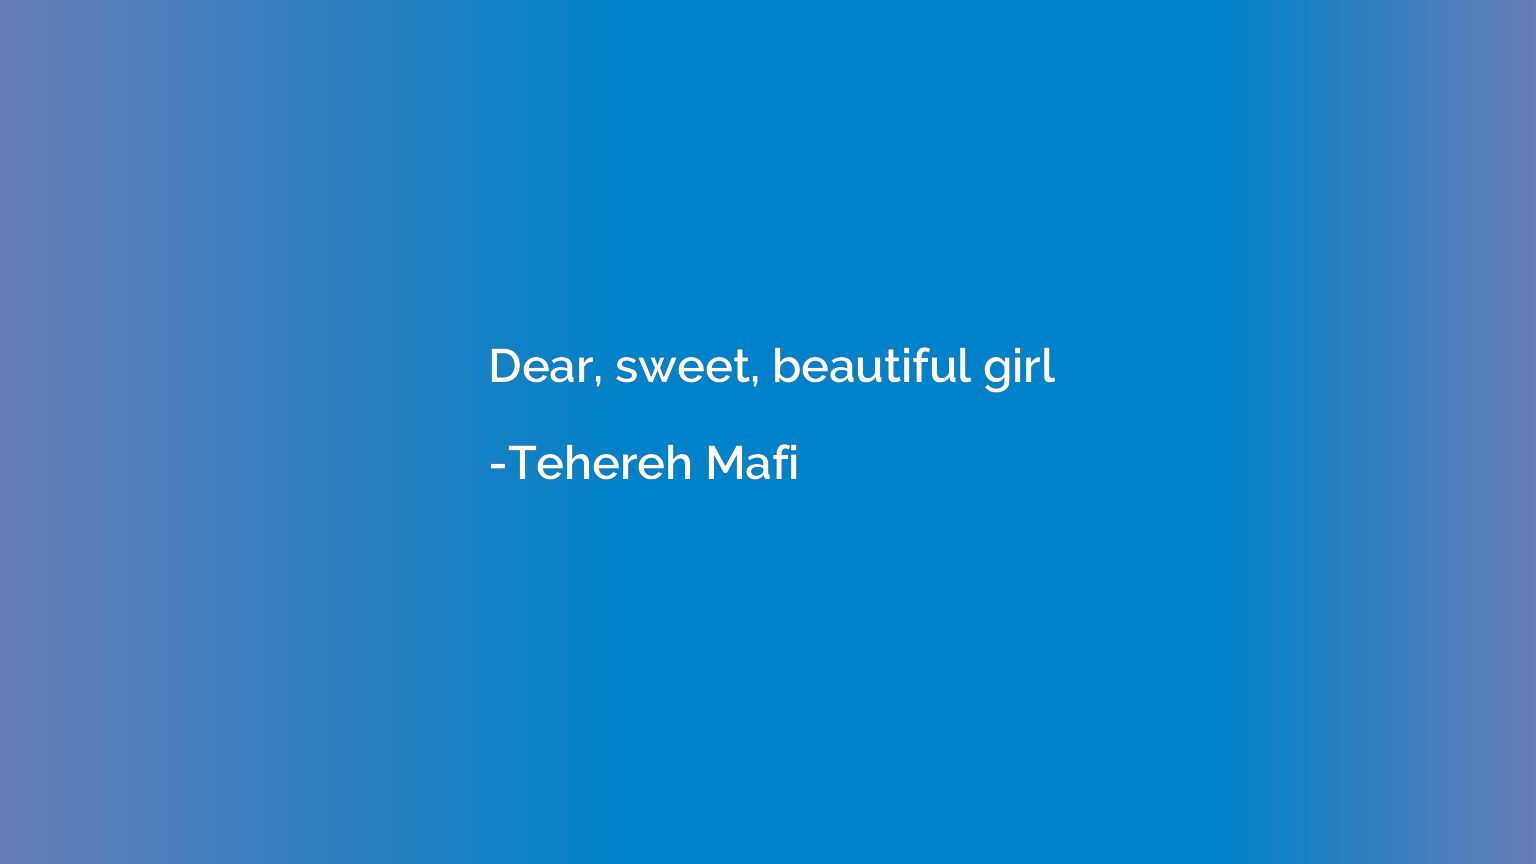 Dear, sweet, beautiful girl